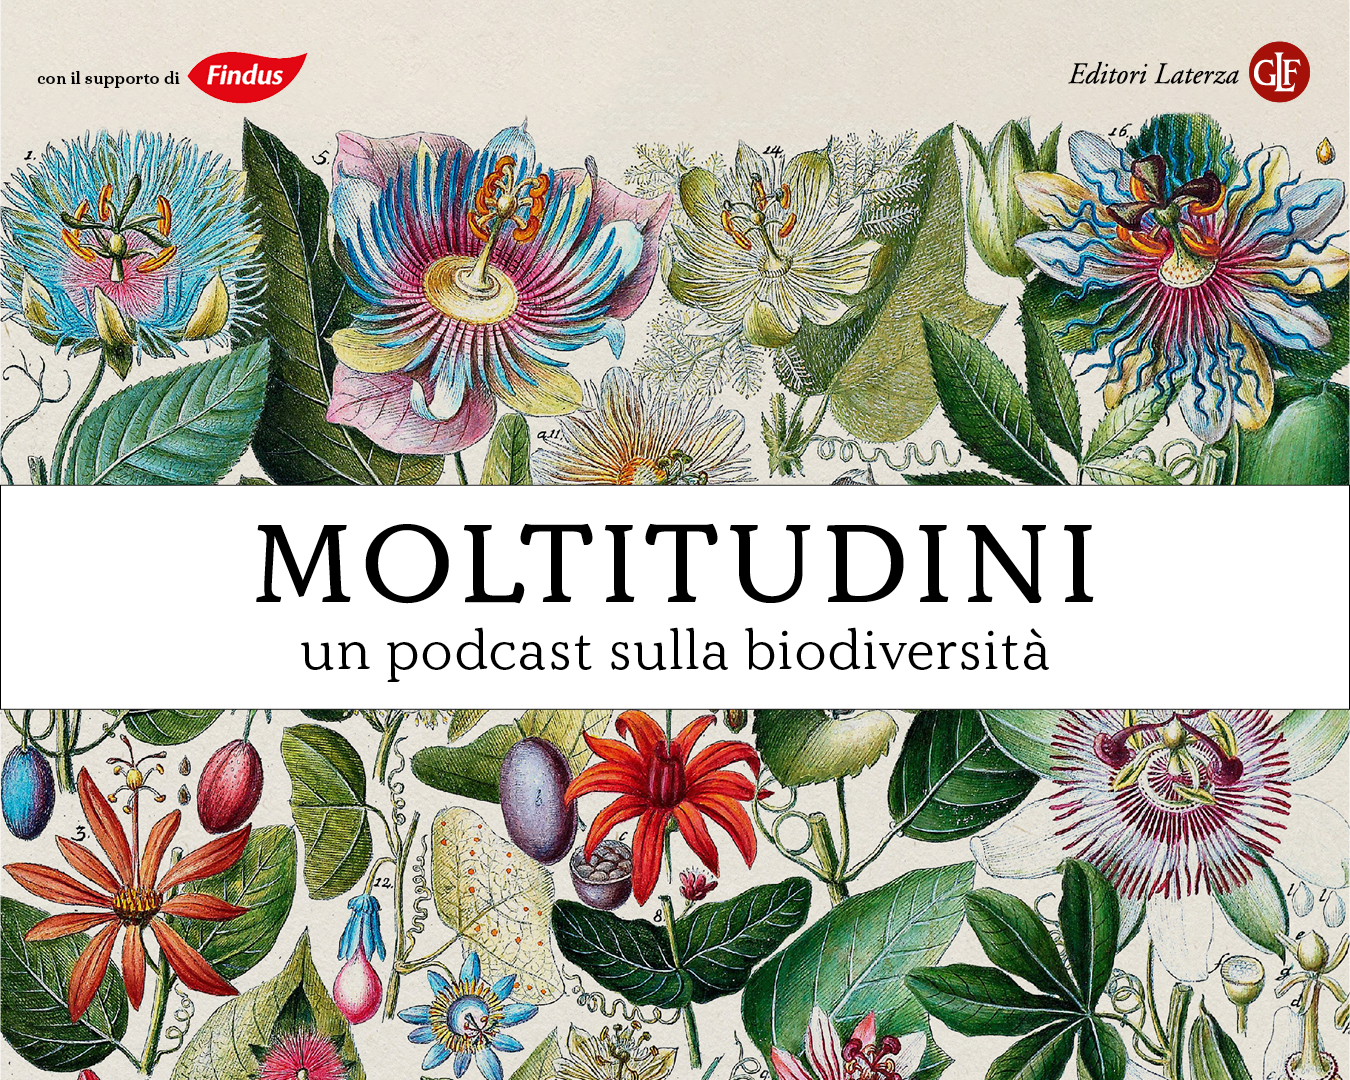 Moltitudini, un podcast sulla biodiversità